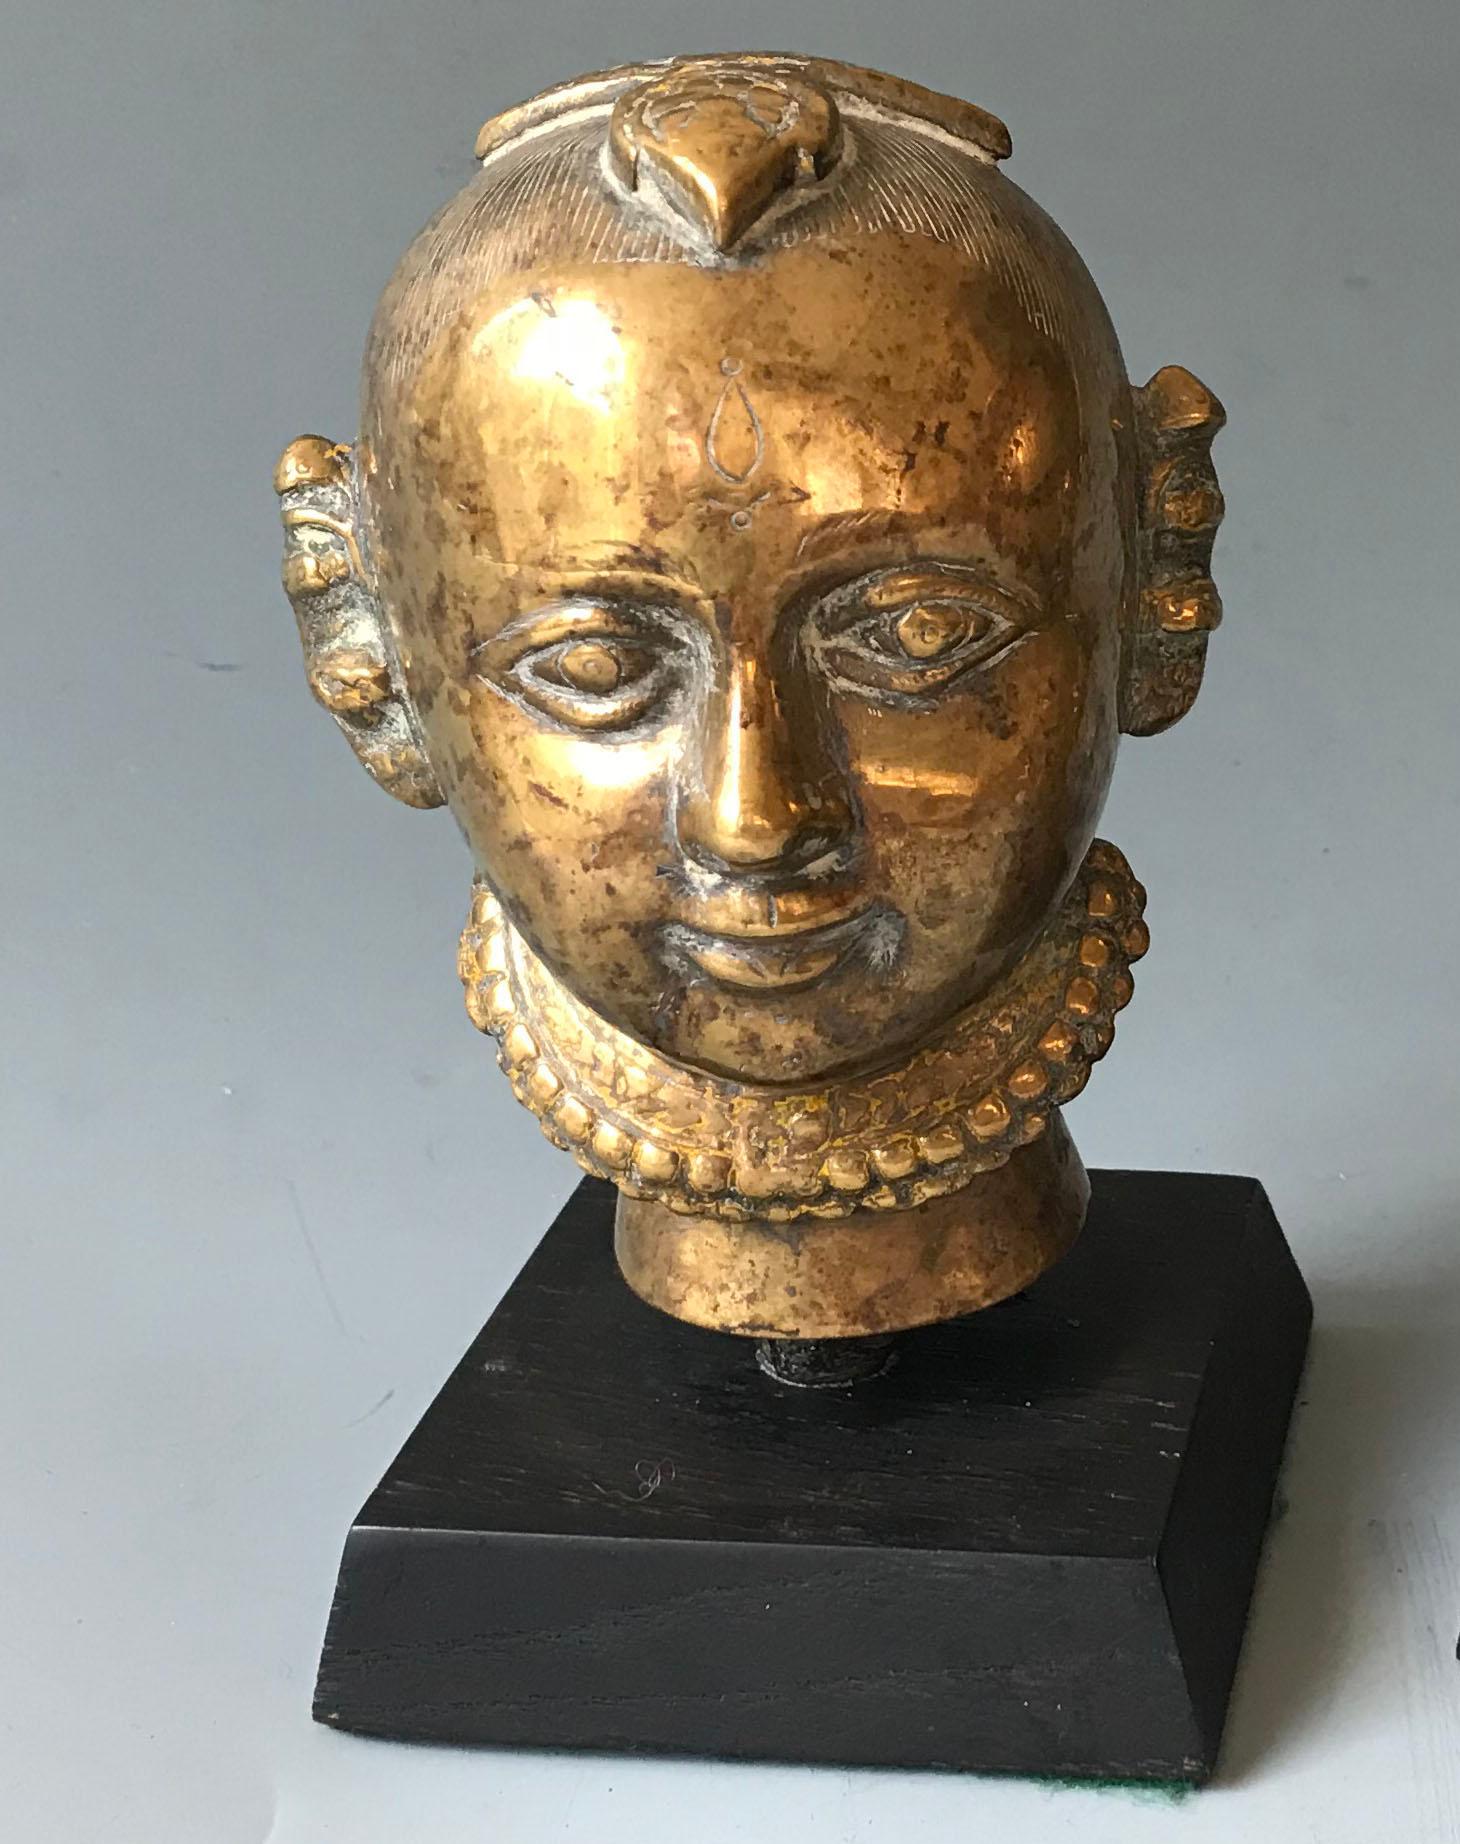 Tête de votive indienne antique hindoue ou jain en laiton 

Période : 19e siècle

Mesures : Hauteur 12 cm
Présenté avec une base d'exposition.